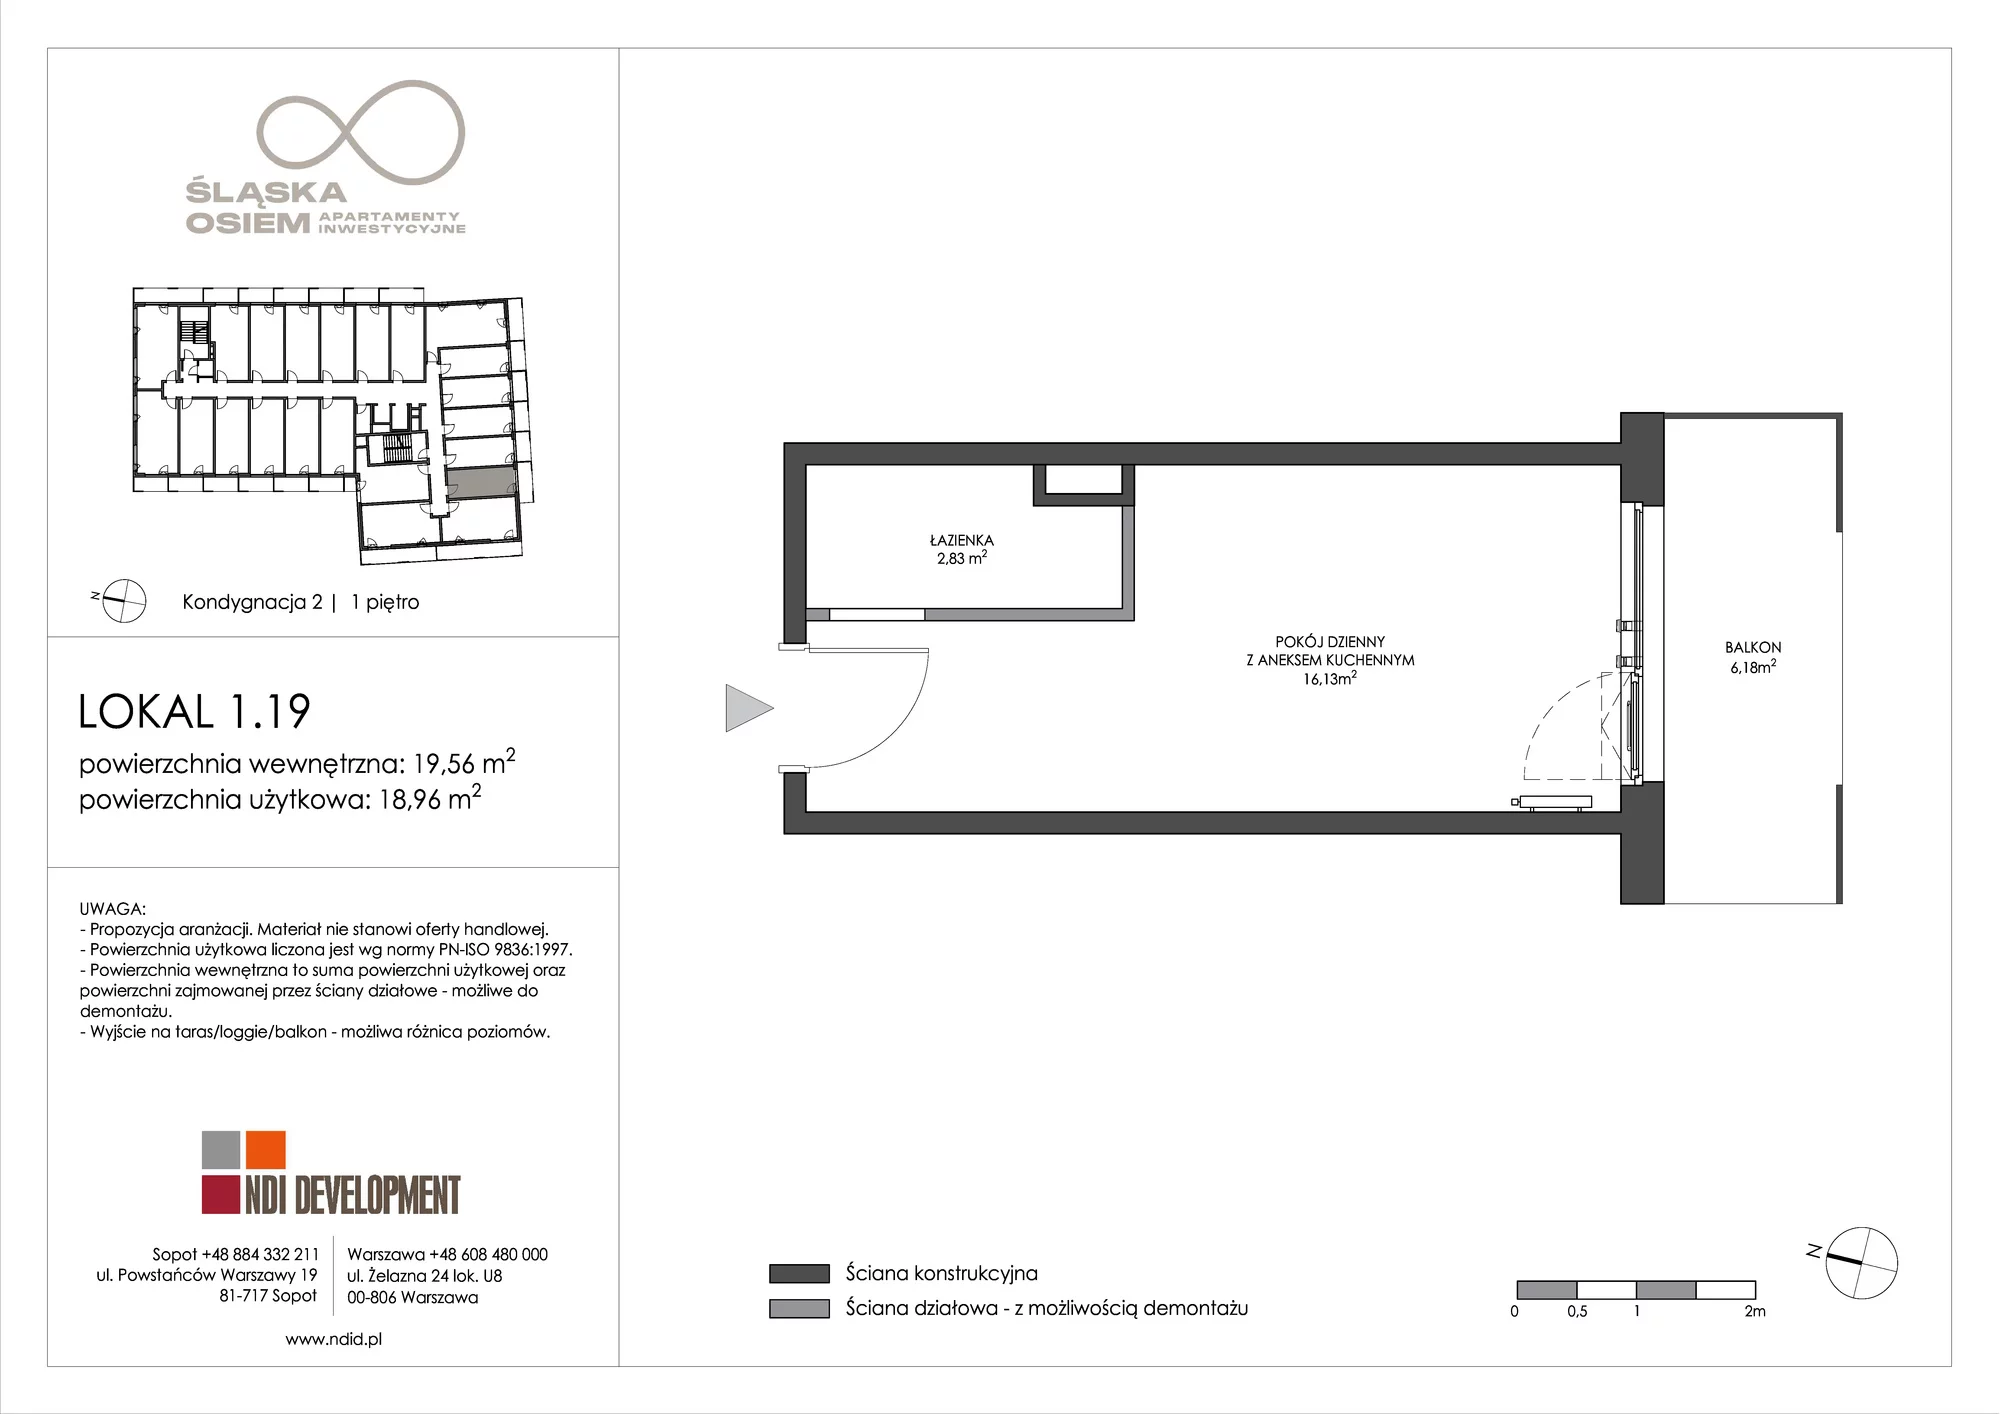 Apartament inwestycyjny 19,56 m², piętro 1, oferta nr 1.19, Śląska Osiem, Gdańsk, Przymorze, ul. Śląska 8